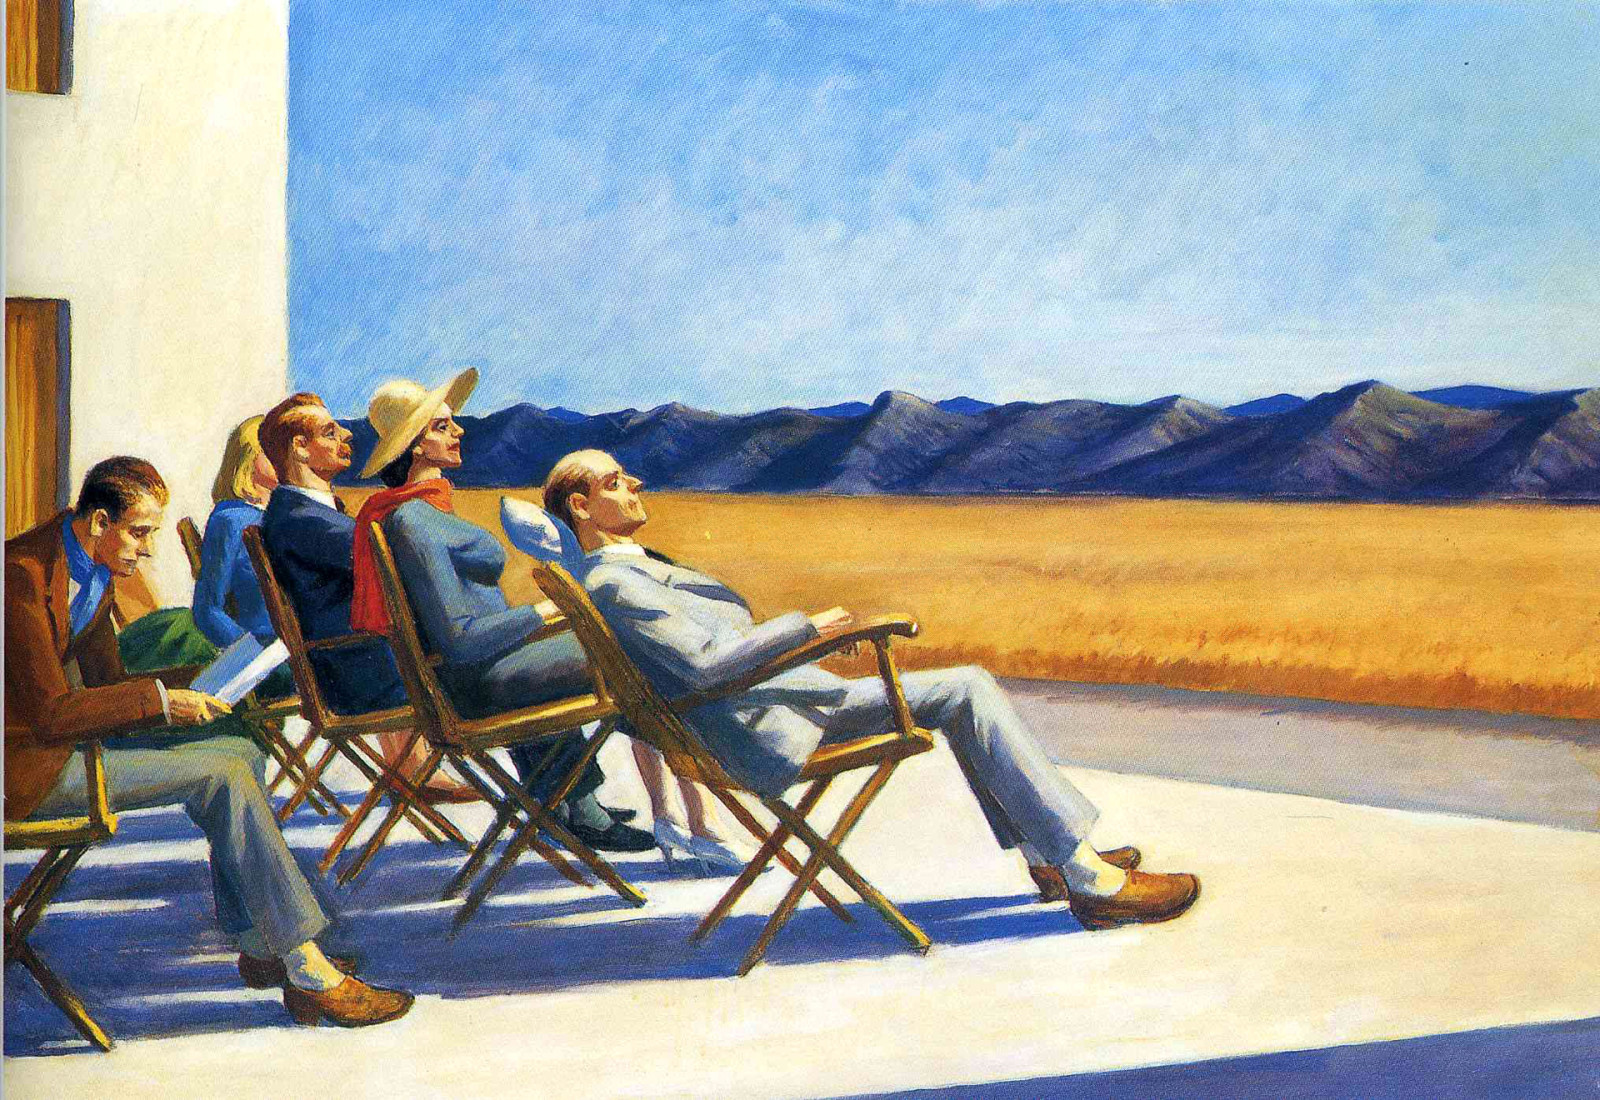 ภาพ, ภูเขา, คน, เข้าพัก, ประเภท, Edward Hopper, ผู้คนในดวงอาทิตย์